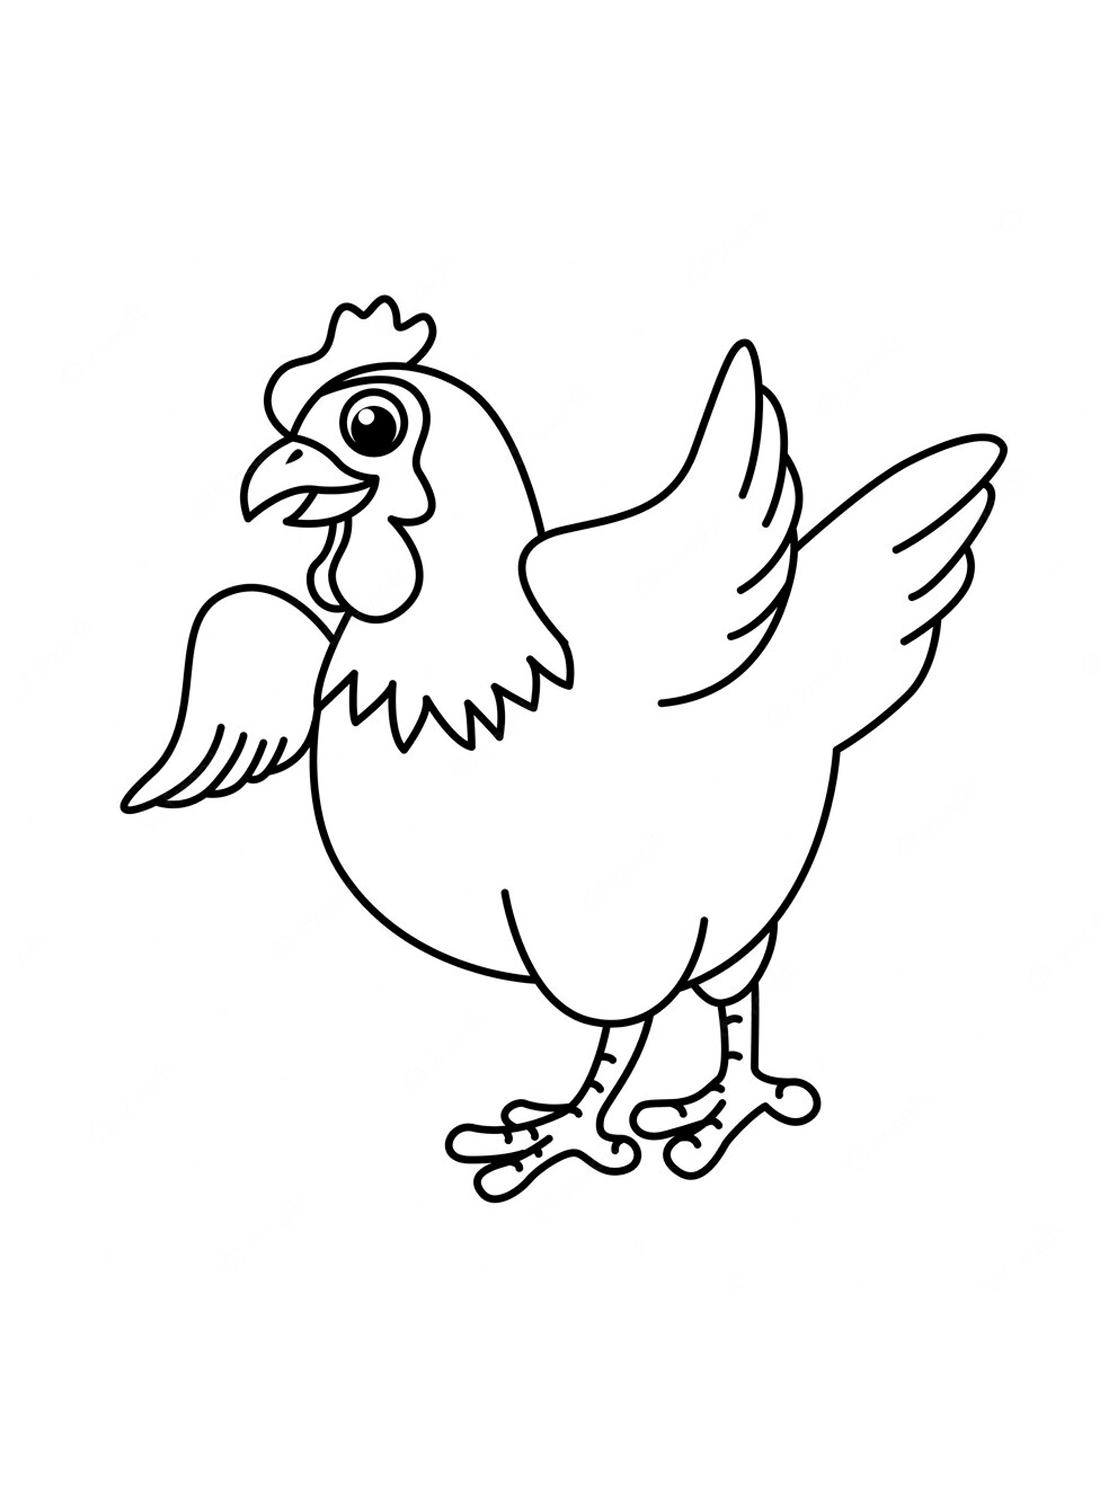 Dibujos para colorear de gallina